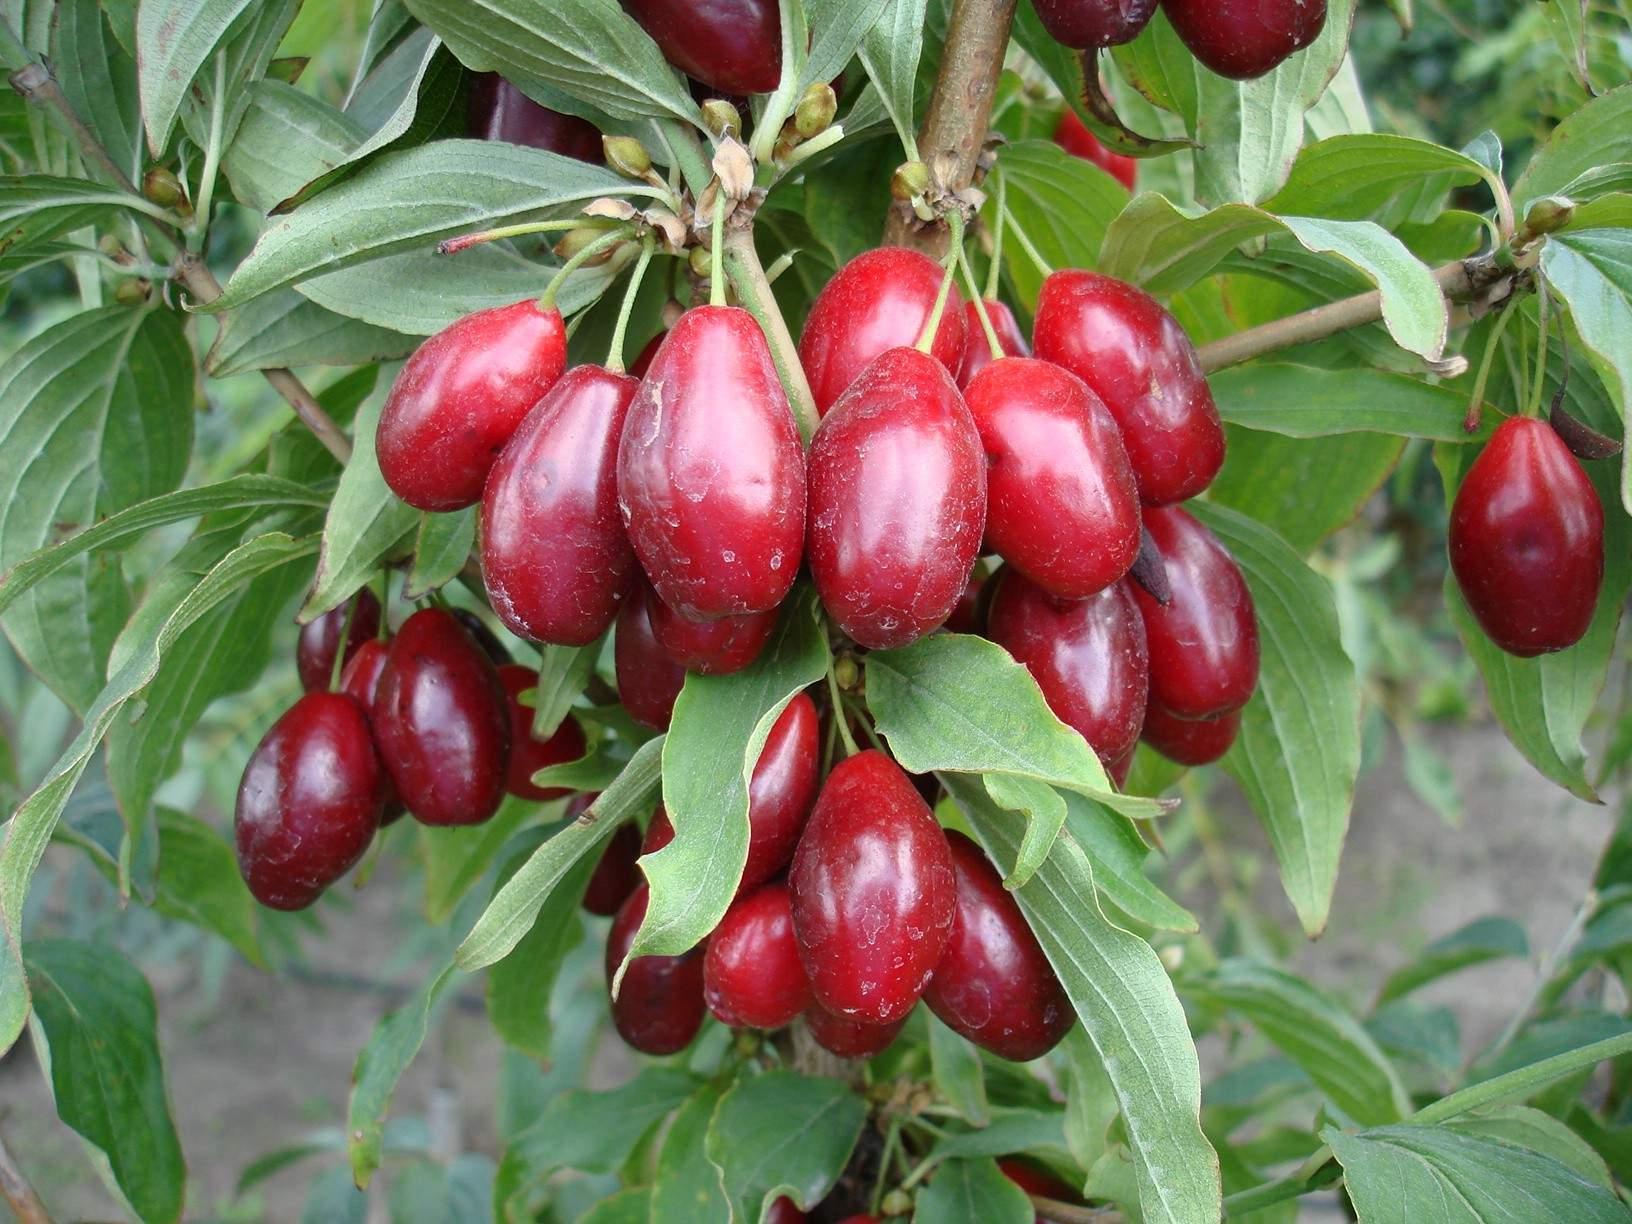 Plodovi drena jedu se svježi, smrznuti ili sušeni - Avaz